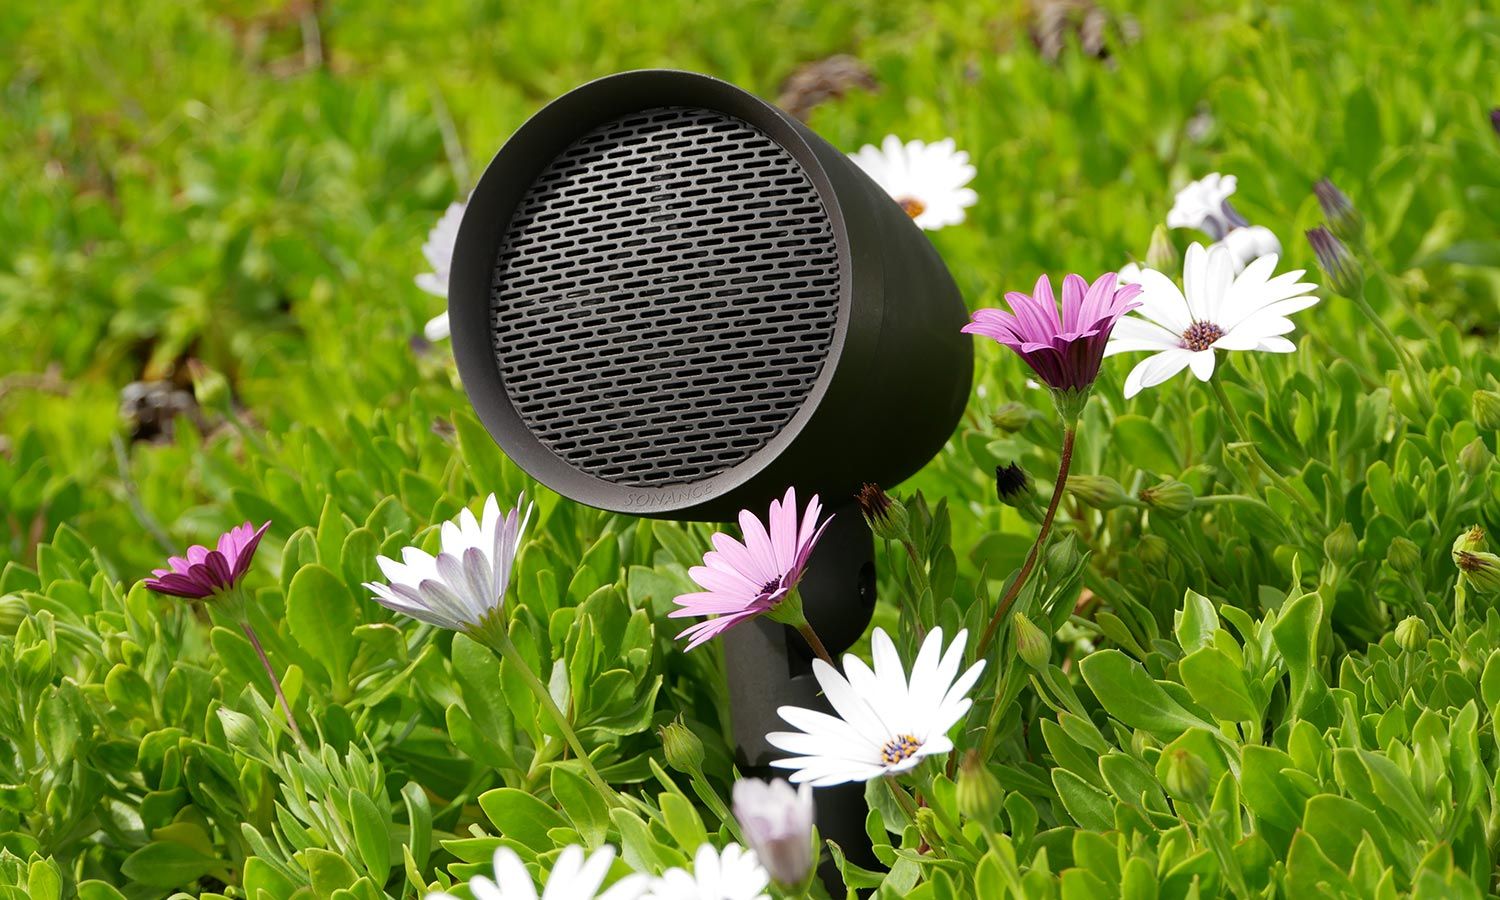 Sonance outdoor speaker nestled among flowers, blending seamlessly with the garden environment.